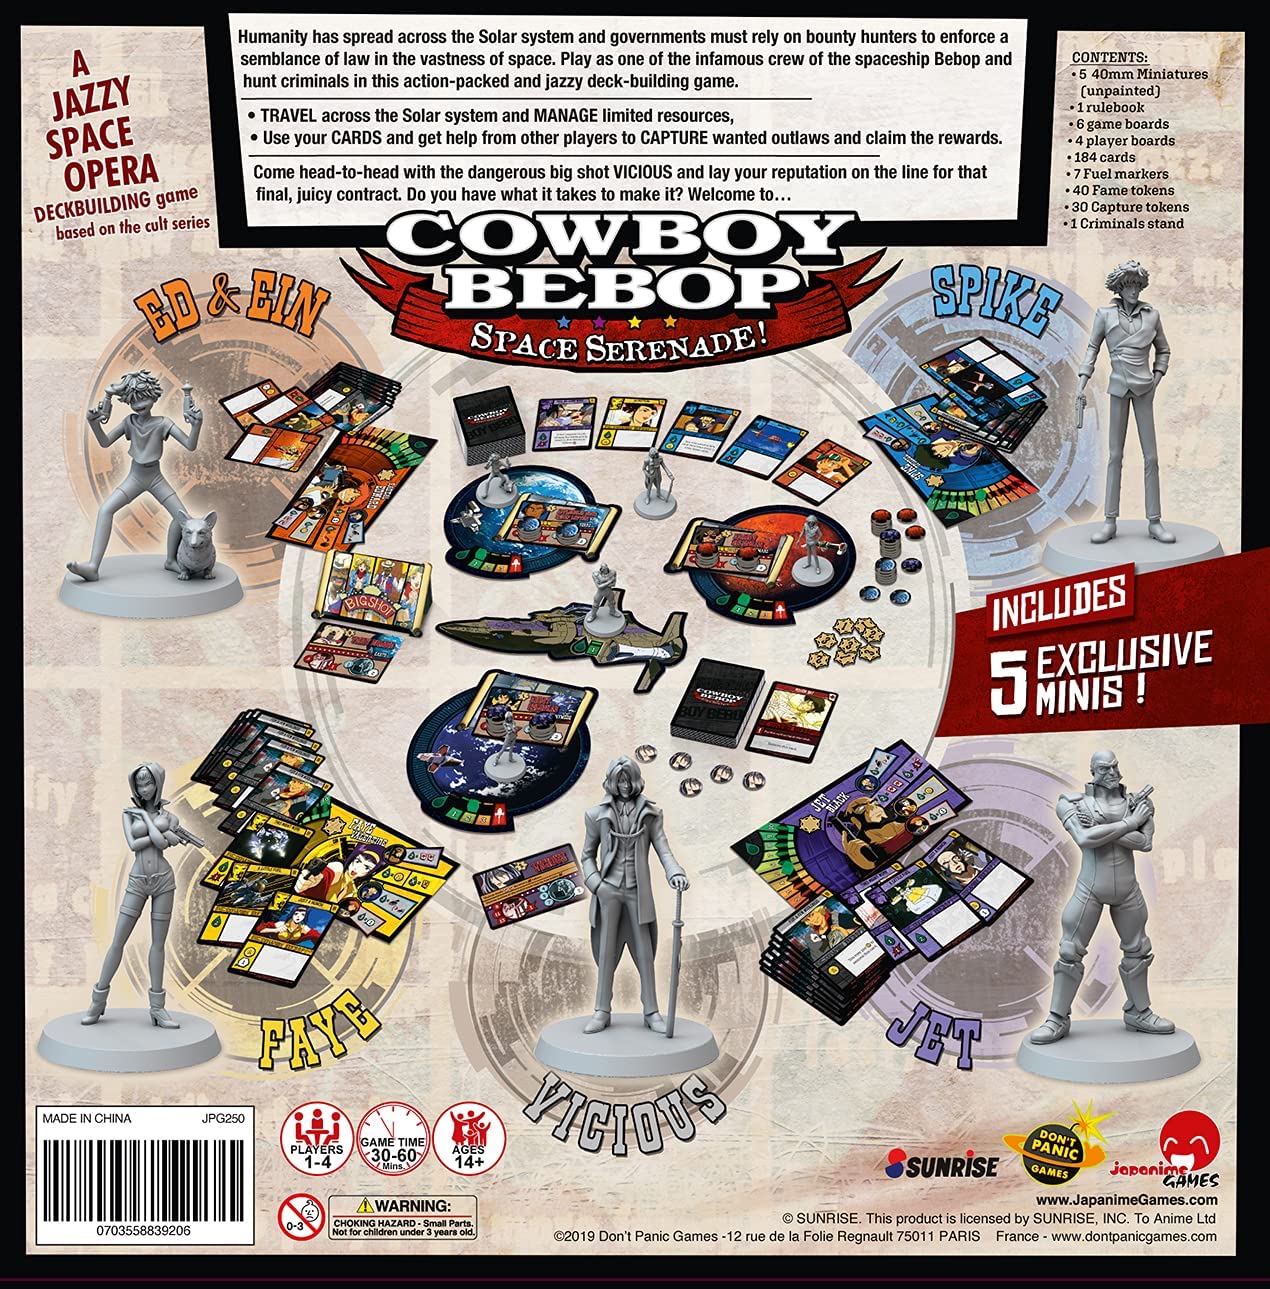 Cowboy Bebop: Space Serenade anime board game box contents